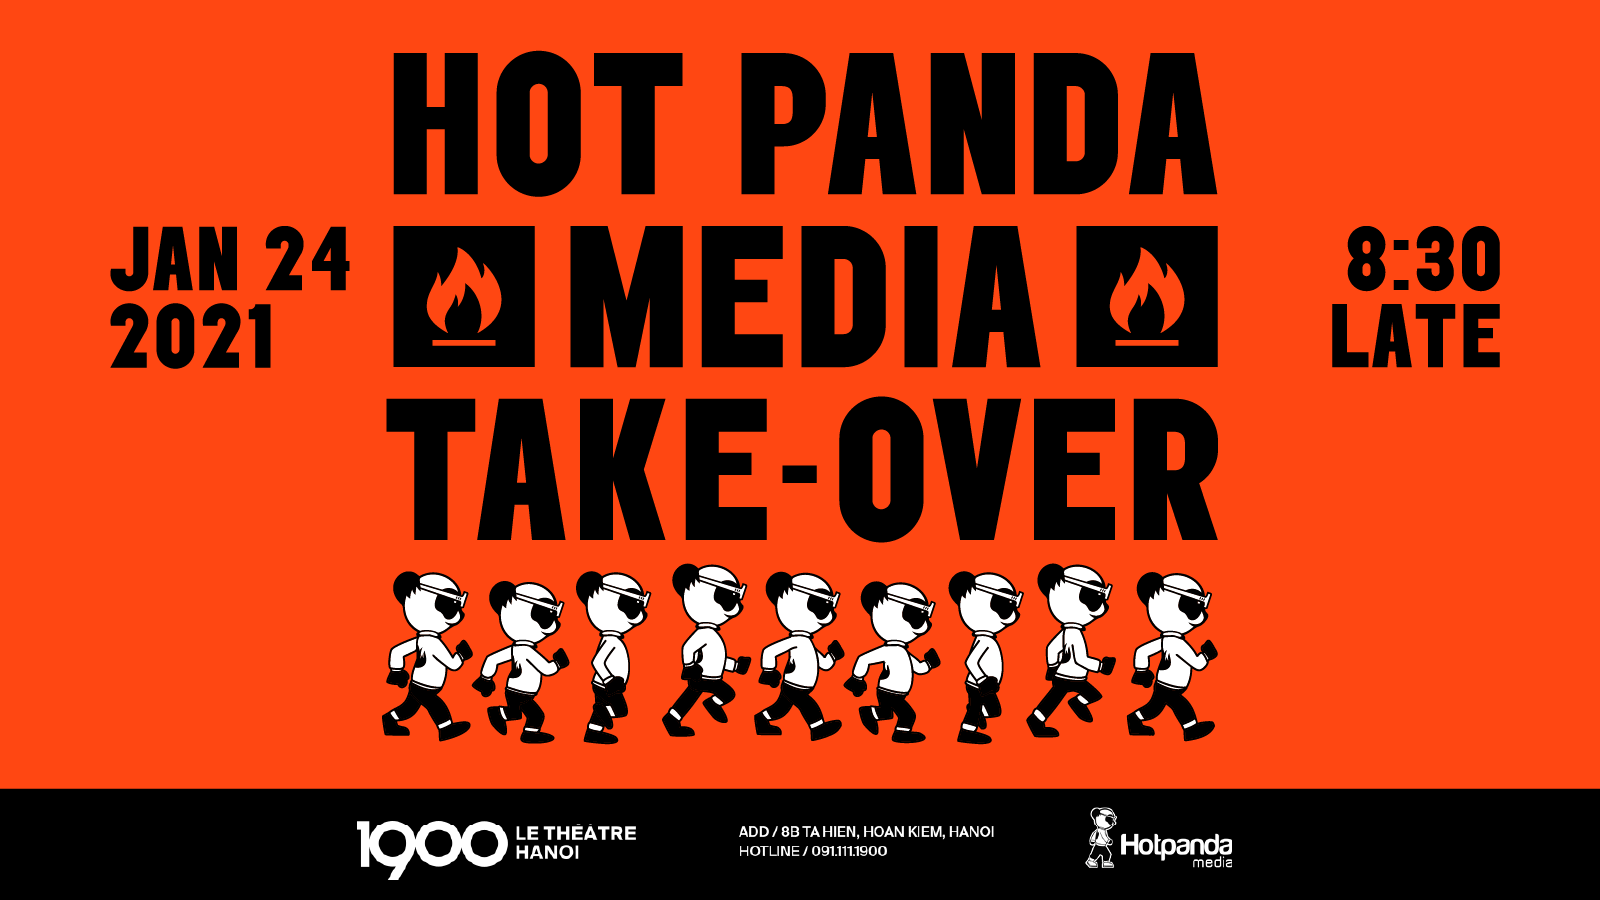 Hot Panda Media 1900 Take Over - Cuộc Đổ Bộ Của Dàn Nghệ Sĩ Tài Năng Nhà Gấu Trúc